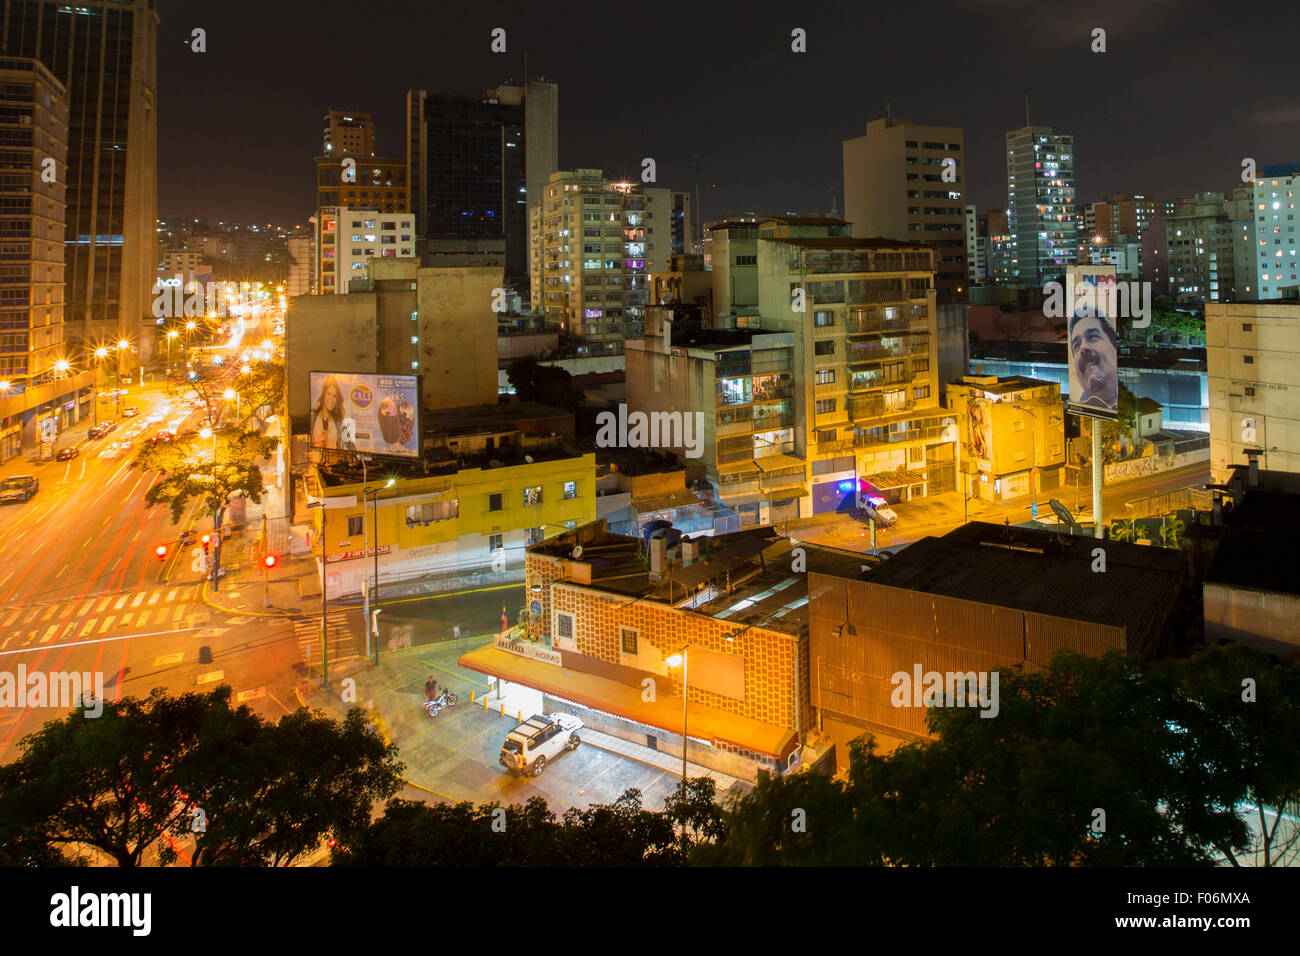 Panoramablick von Caracas, Venezuela, in der Nacht mit einer Plakatwand anzeigen Maduro, der neue Präsident von Venezuela im Jahr 2015. Stockfoto